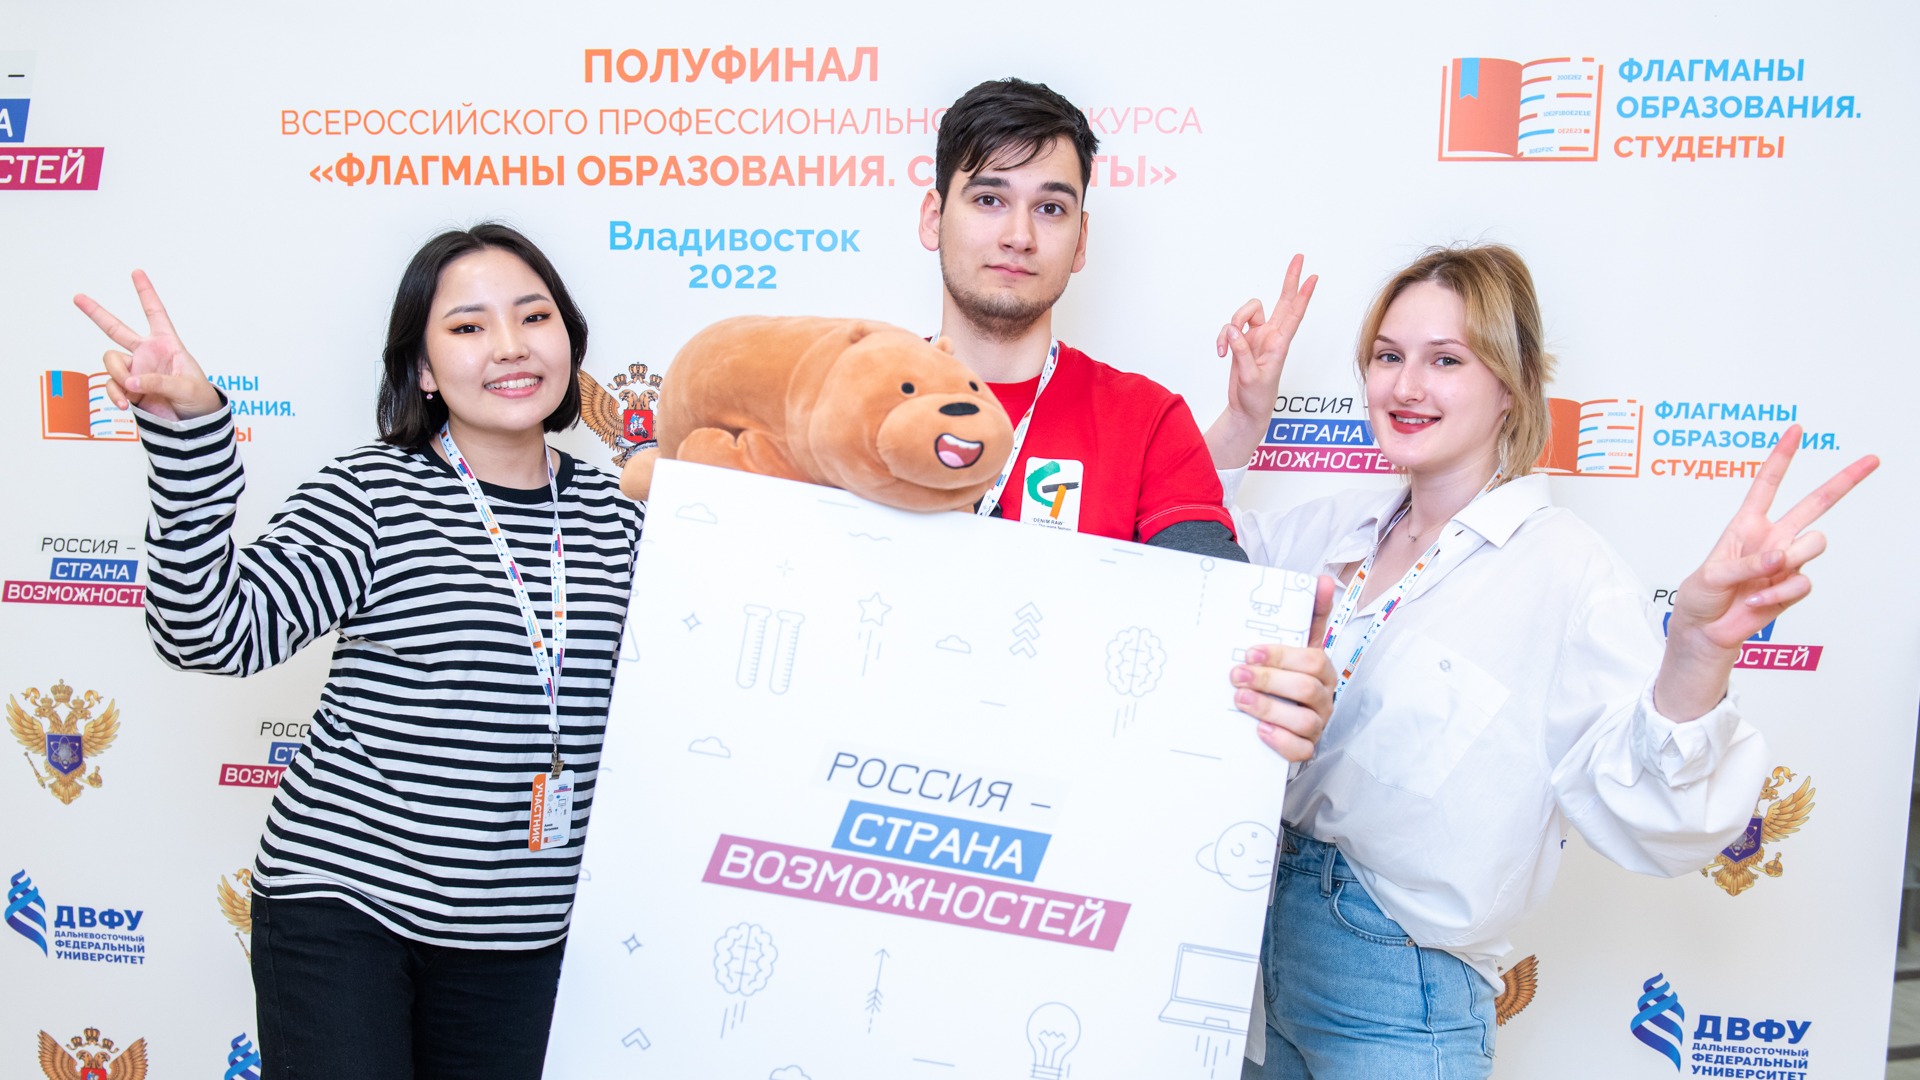 Во Владивостоке стартовал окружной полуфинал конкурса «Флагманы образования. Студенты»